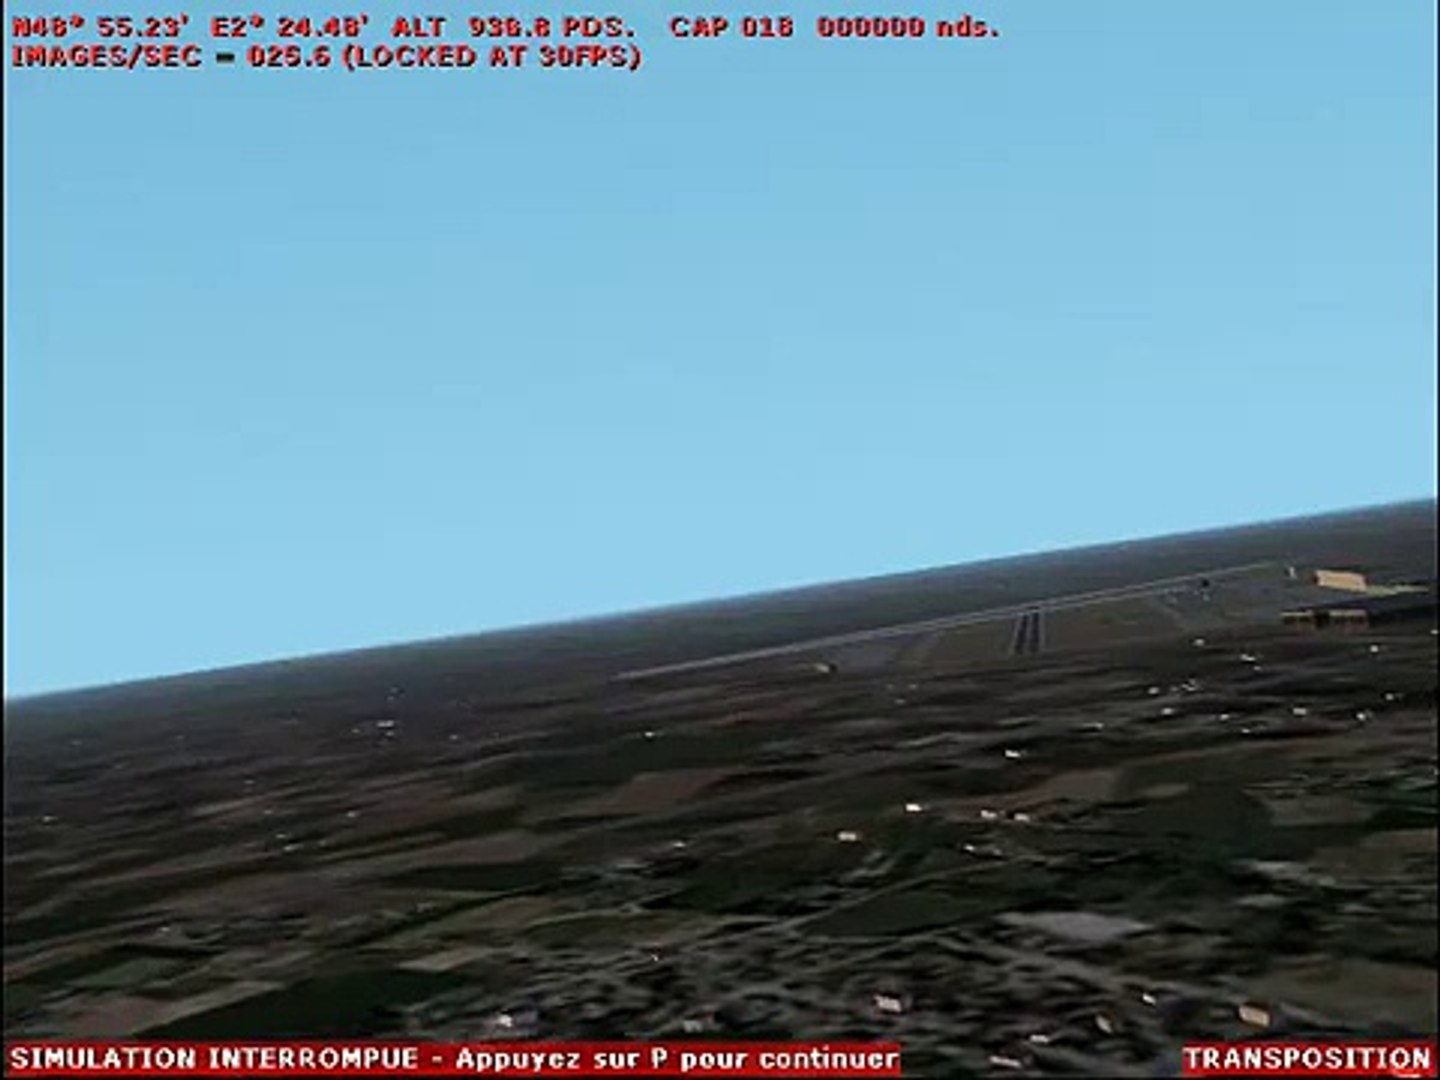 UAV auto landing simulation